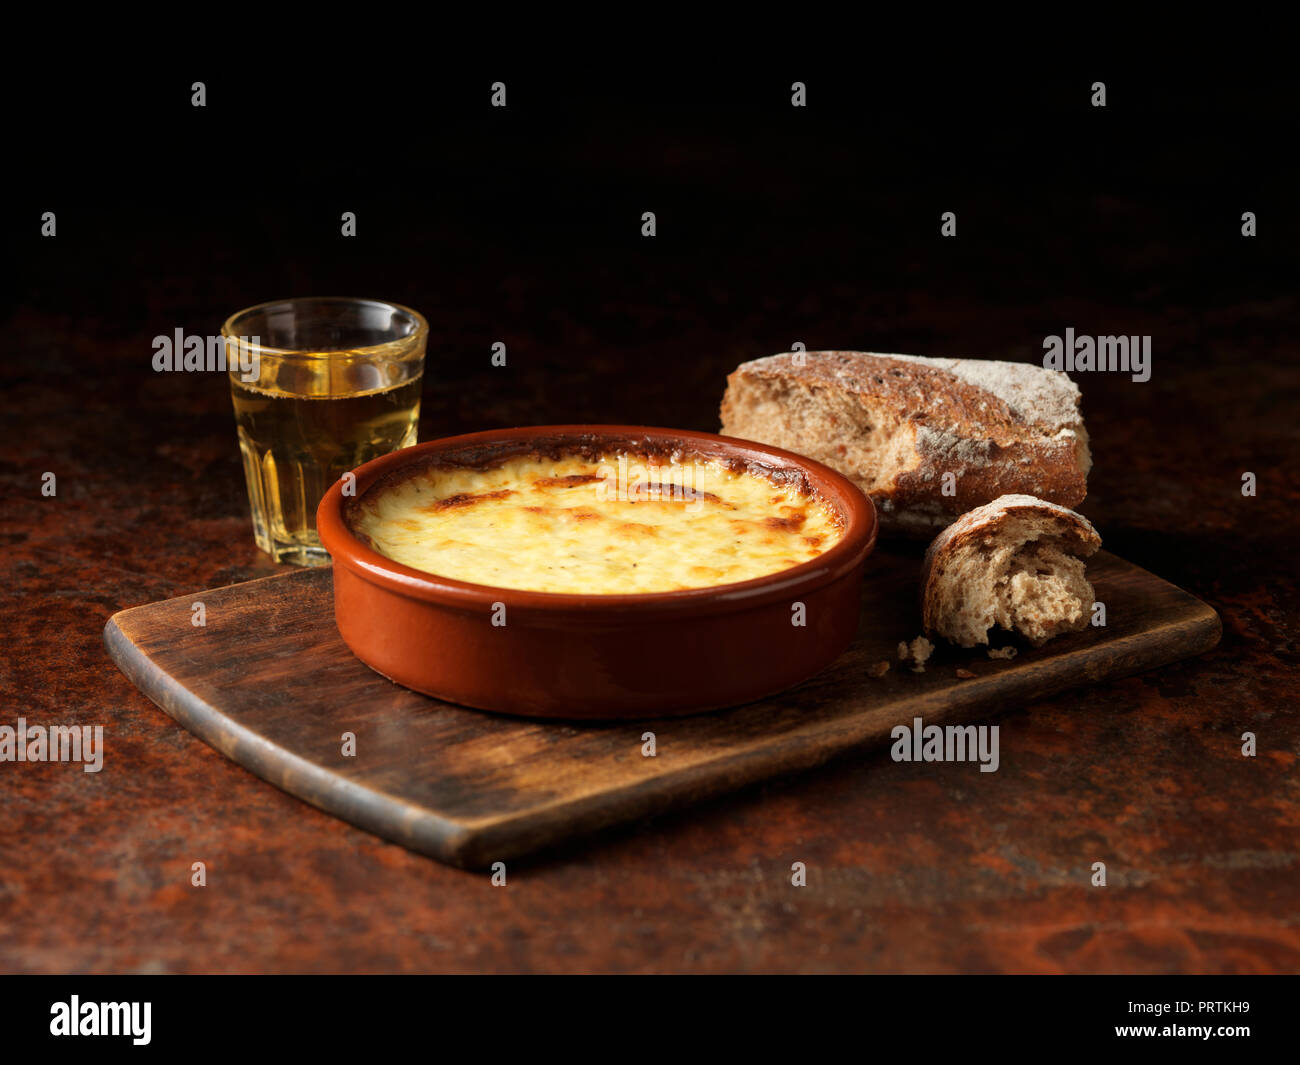 Cheese bake Stock Photo